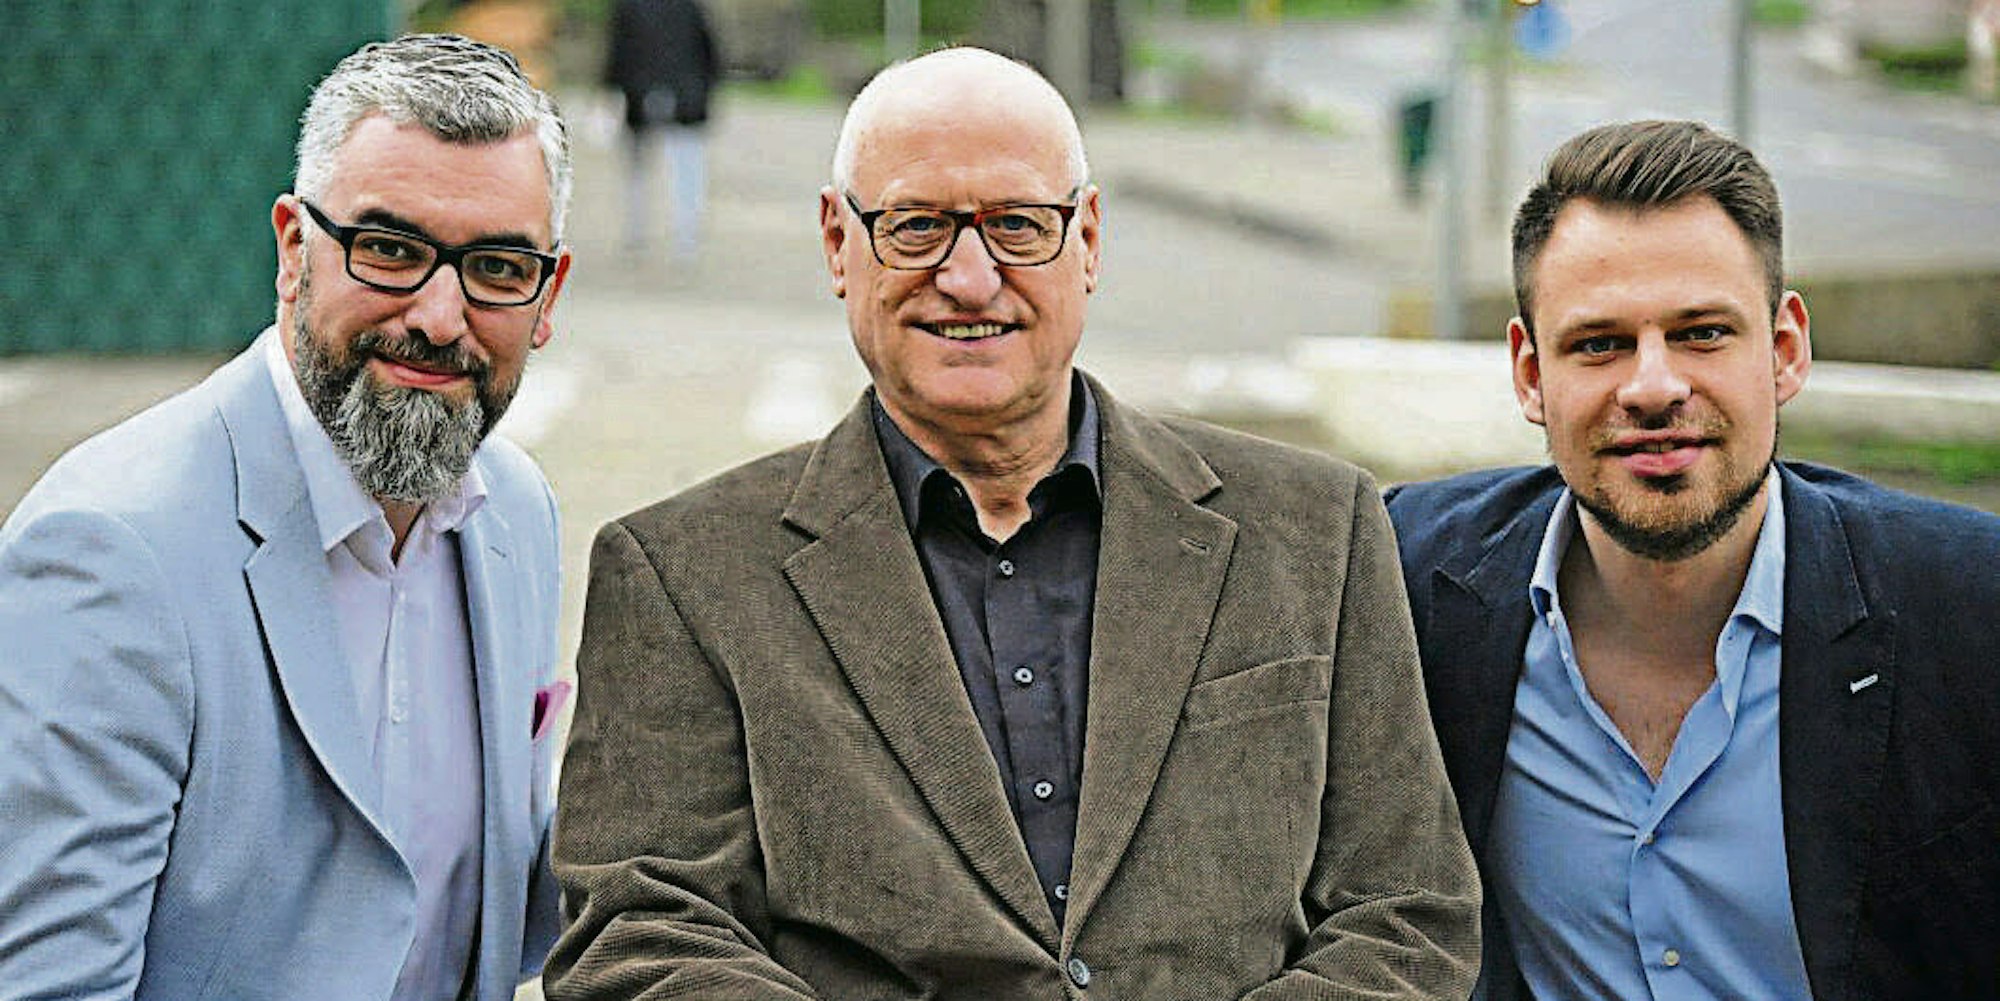 Lothar Esser (M.) mit seinen Stellvertretern Marco Frommenkord (l.) und Alexander Engel